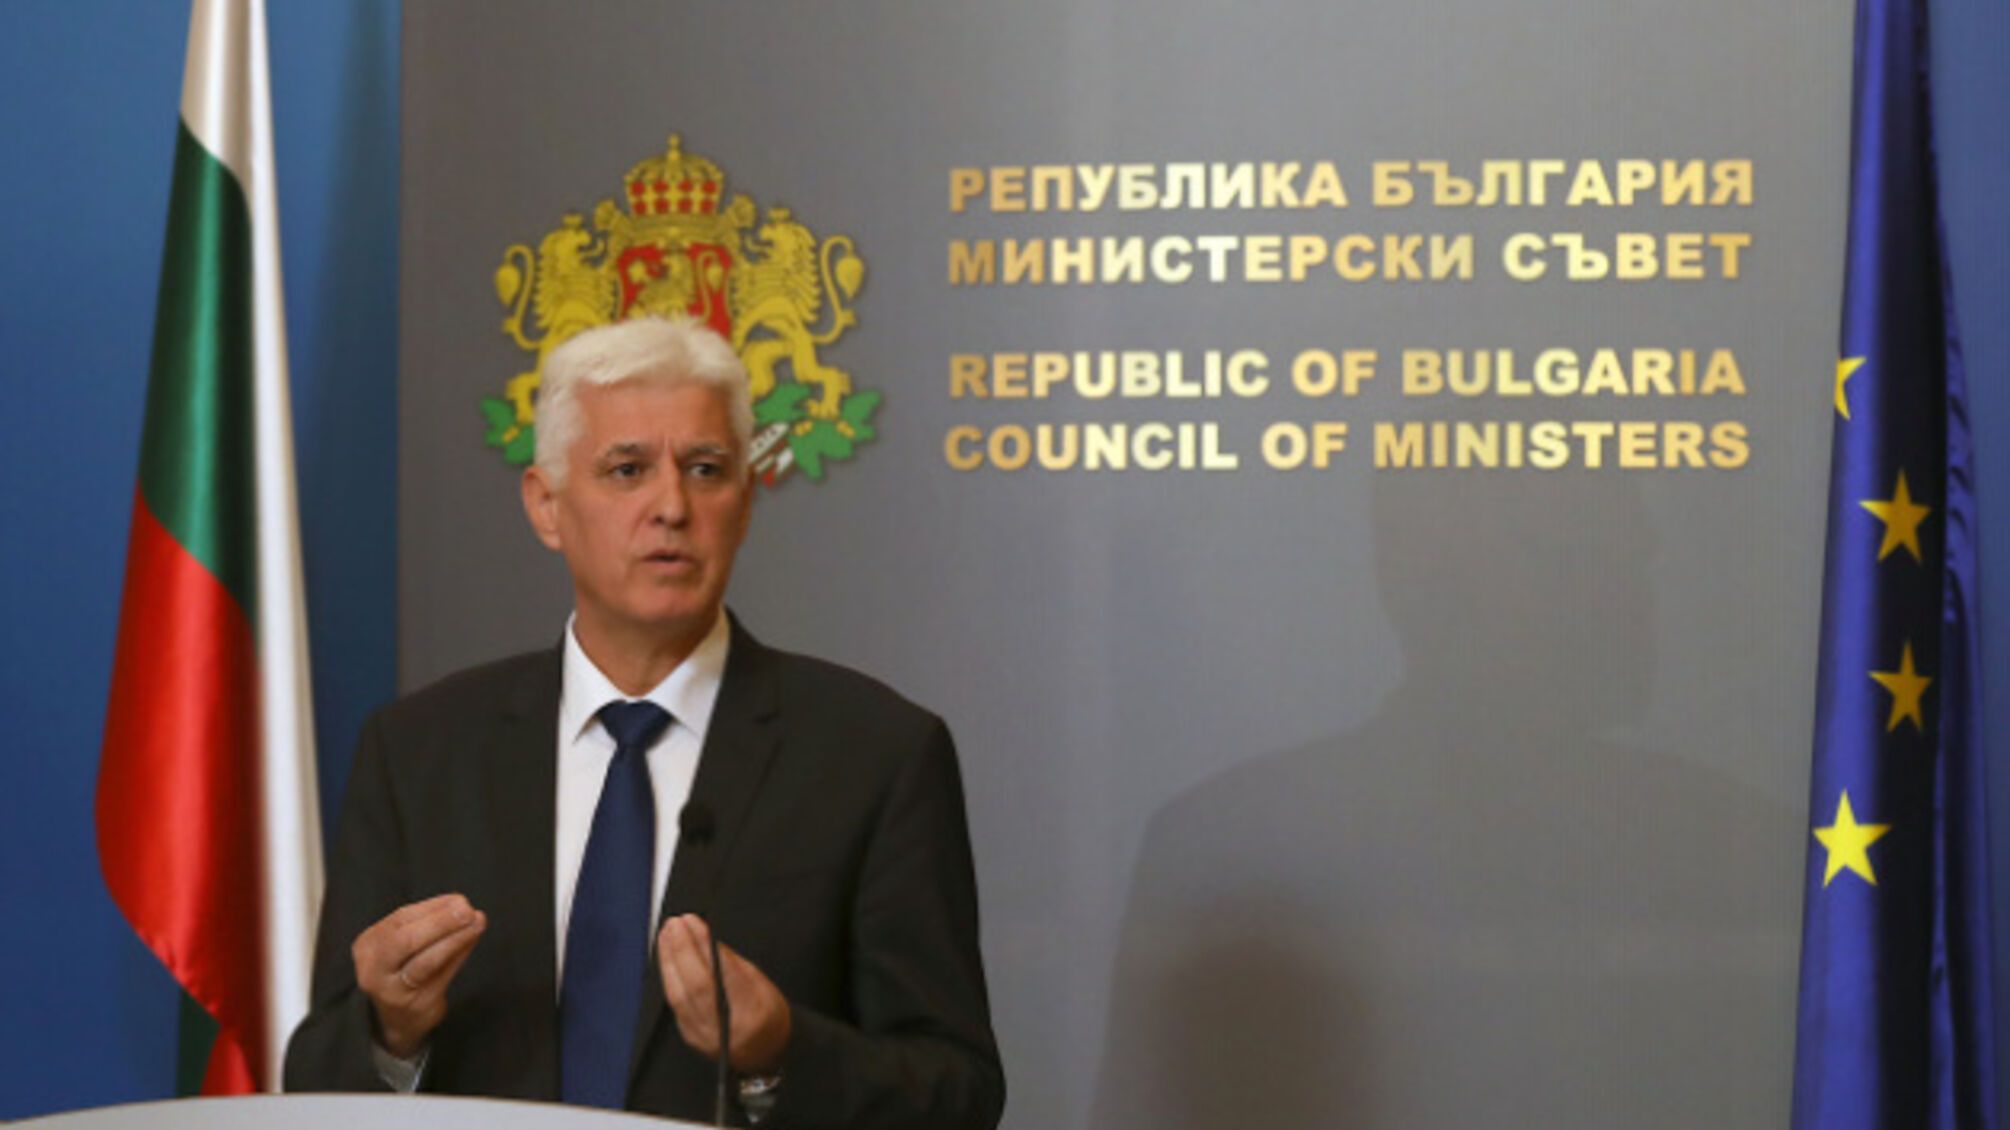 Болгария не будет давать Украине боеприпасы: детали заявления